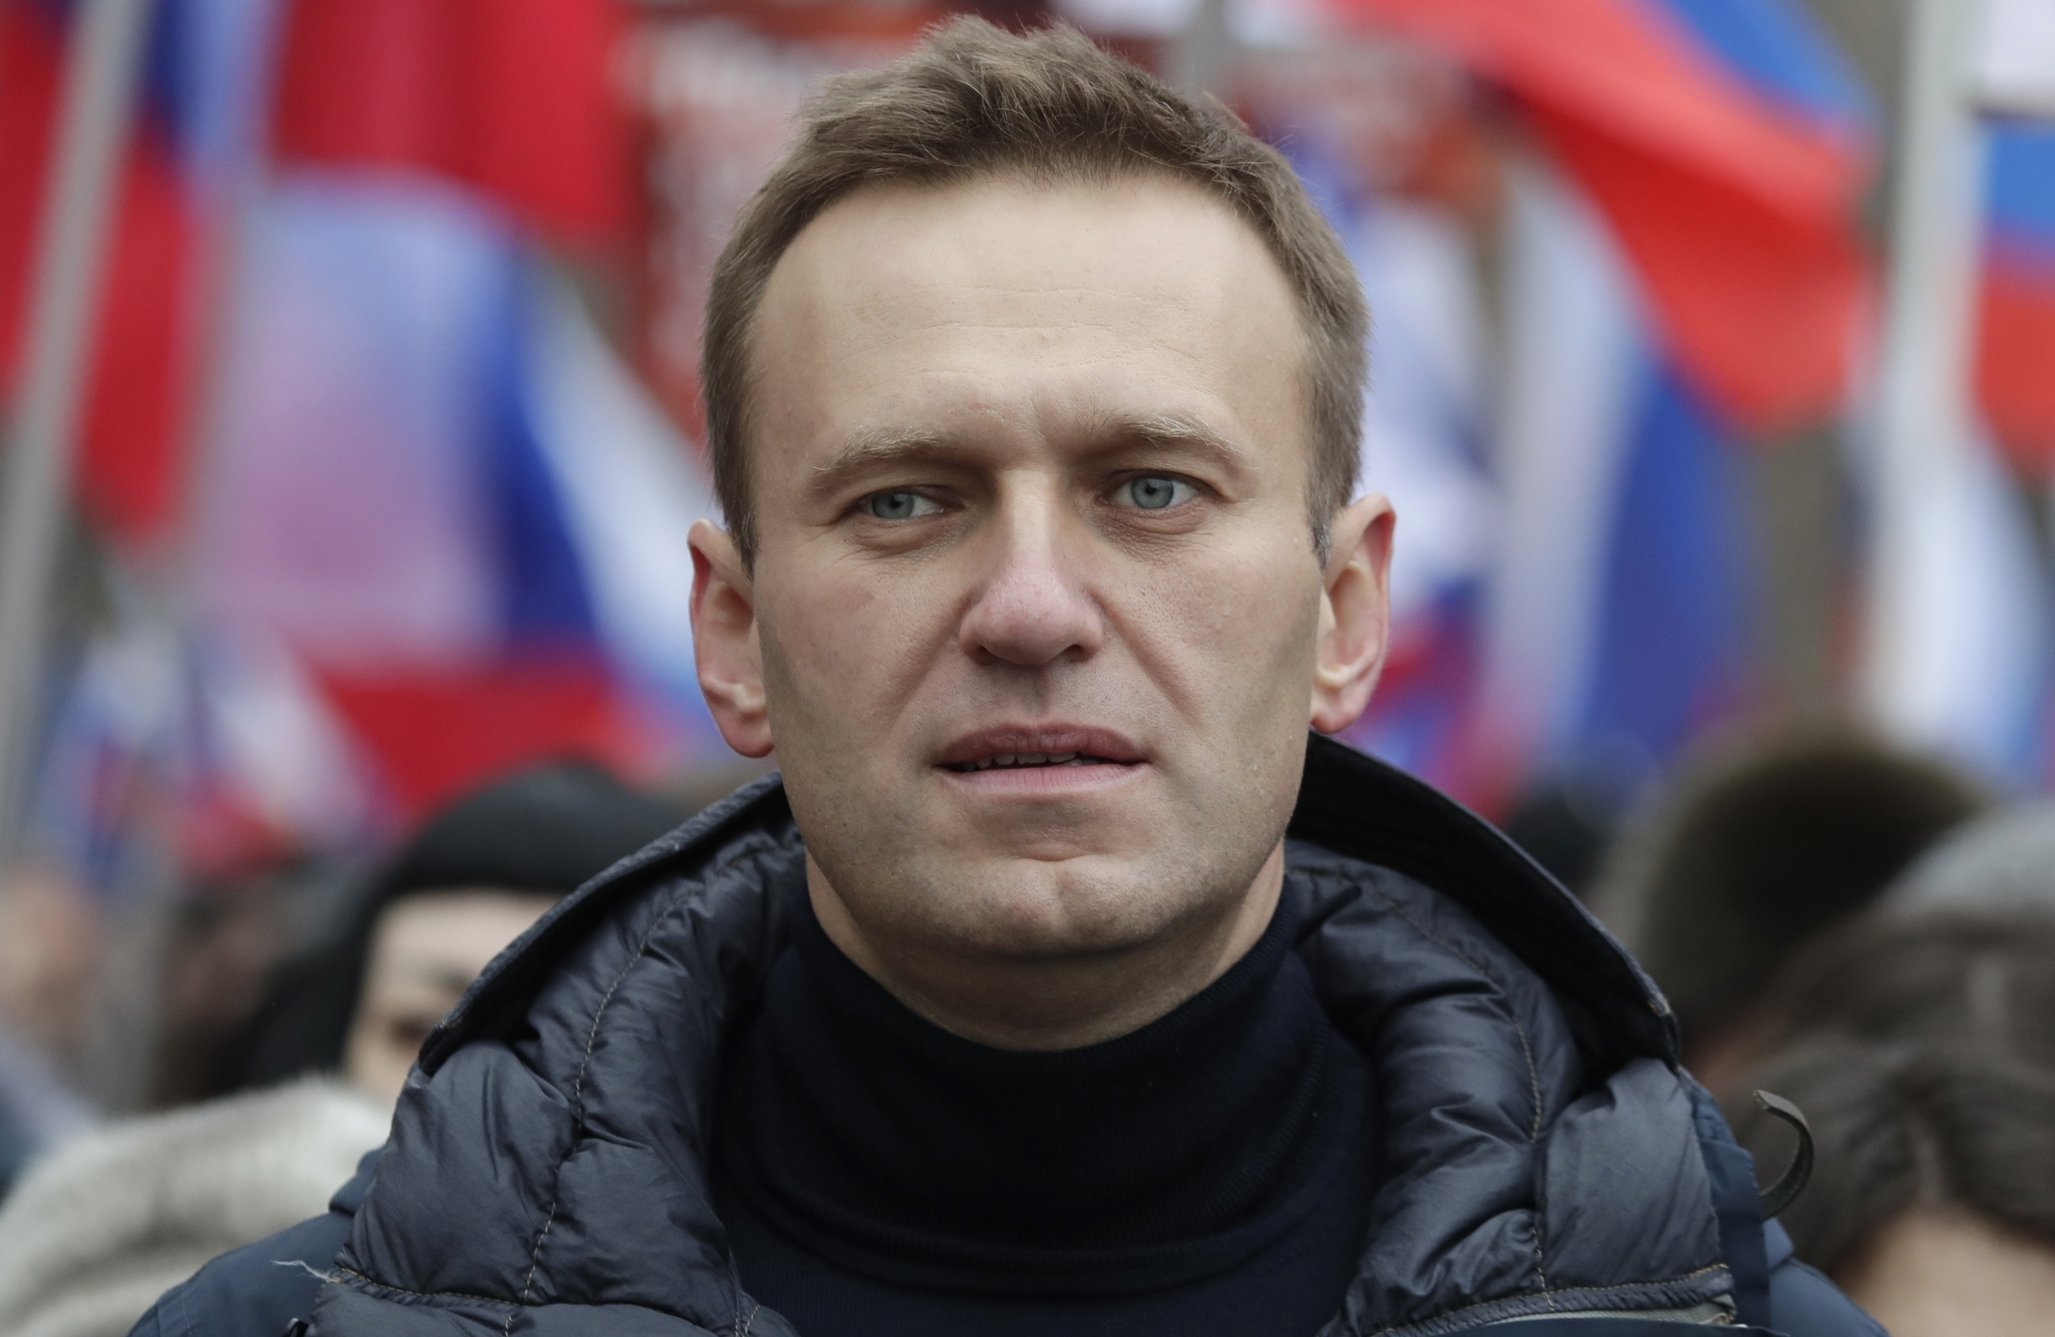 Procurorii ruși spun că nu este nevoie de o investigație criminalistică în cazul Navalnîi